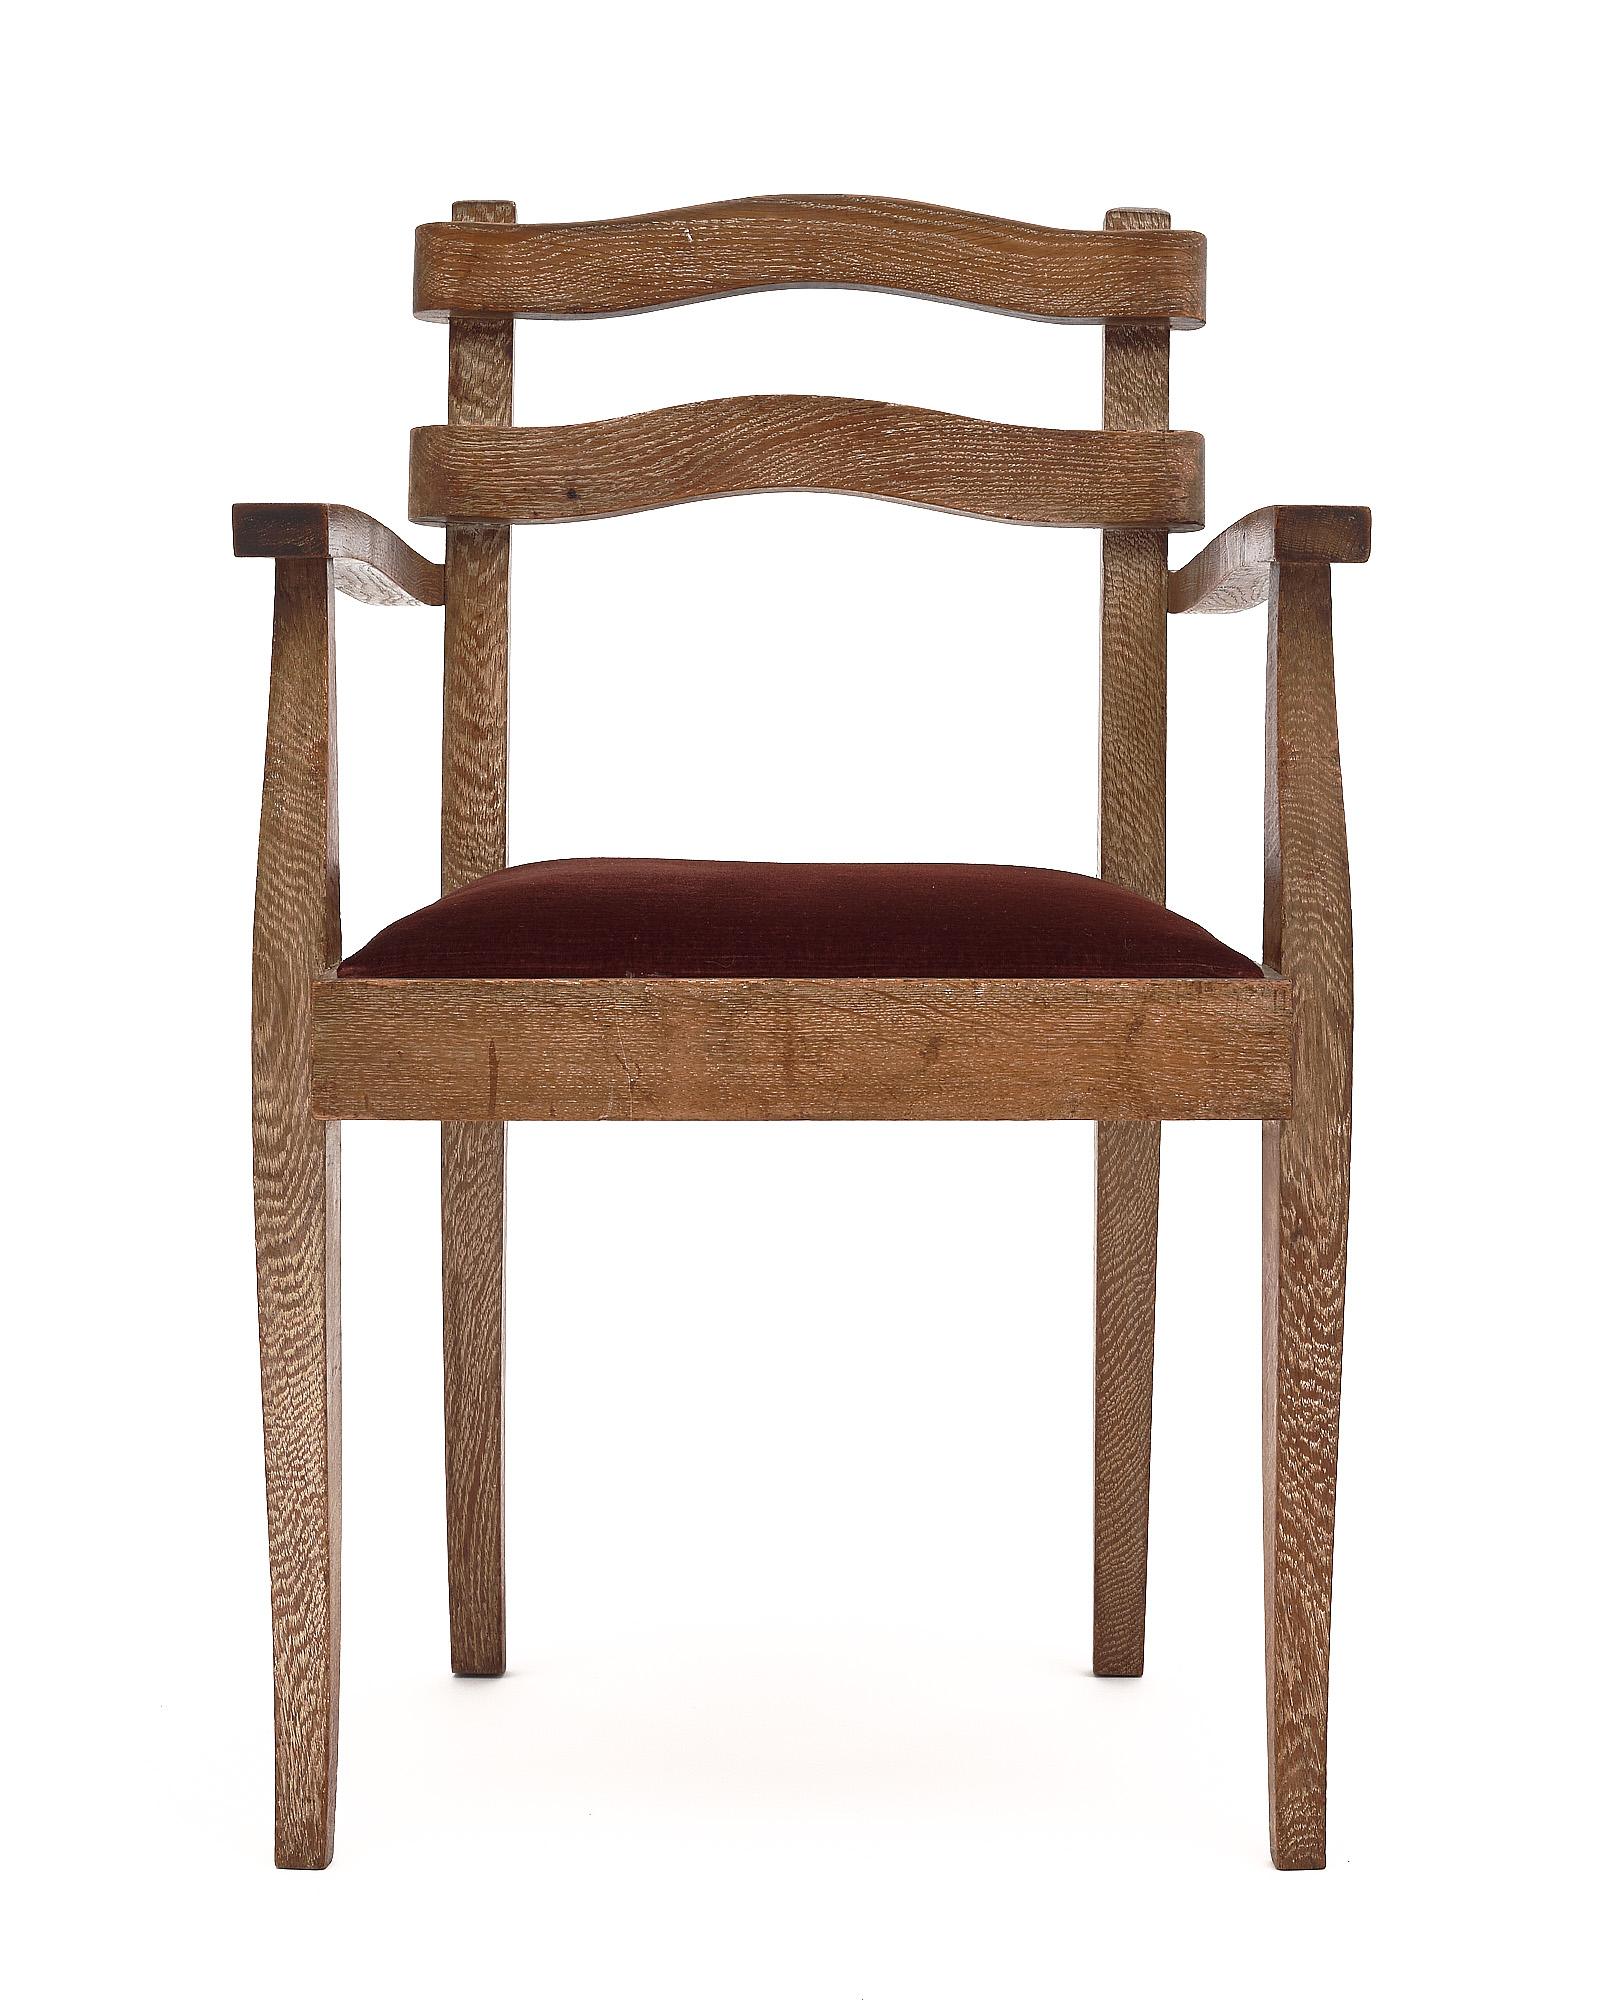 Ensemble de cinq chaises de salle à manger avec accoudoirs. Ces chaises sont fabriquées en chêne massif avec une finition unique en céramique. Les sièges sont recouverts d'un mélange de velours bordeaux d'origine.